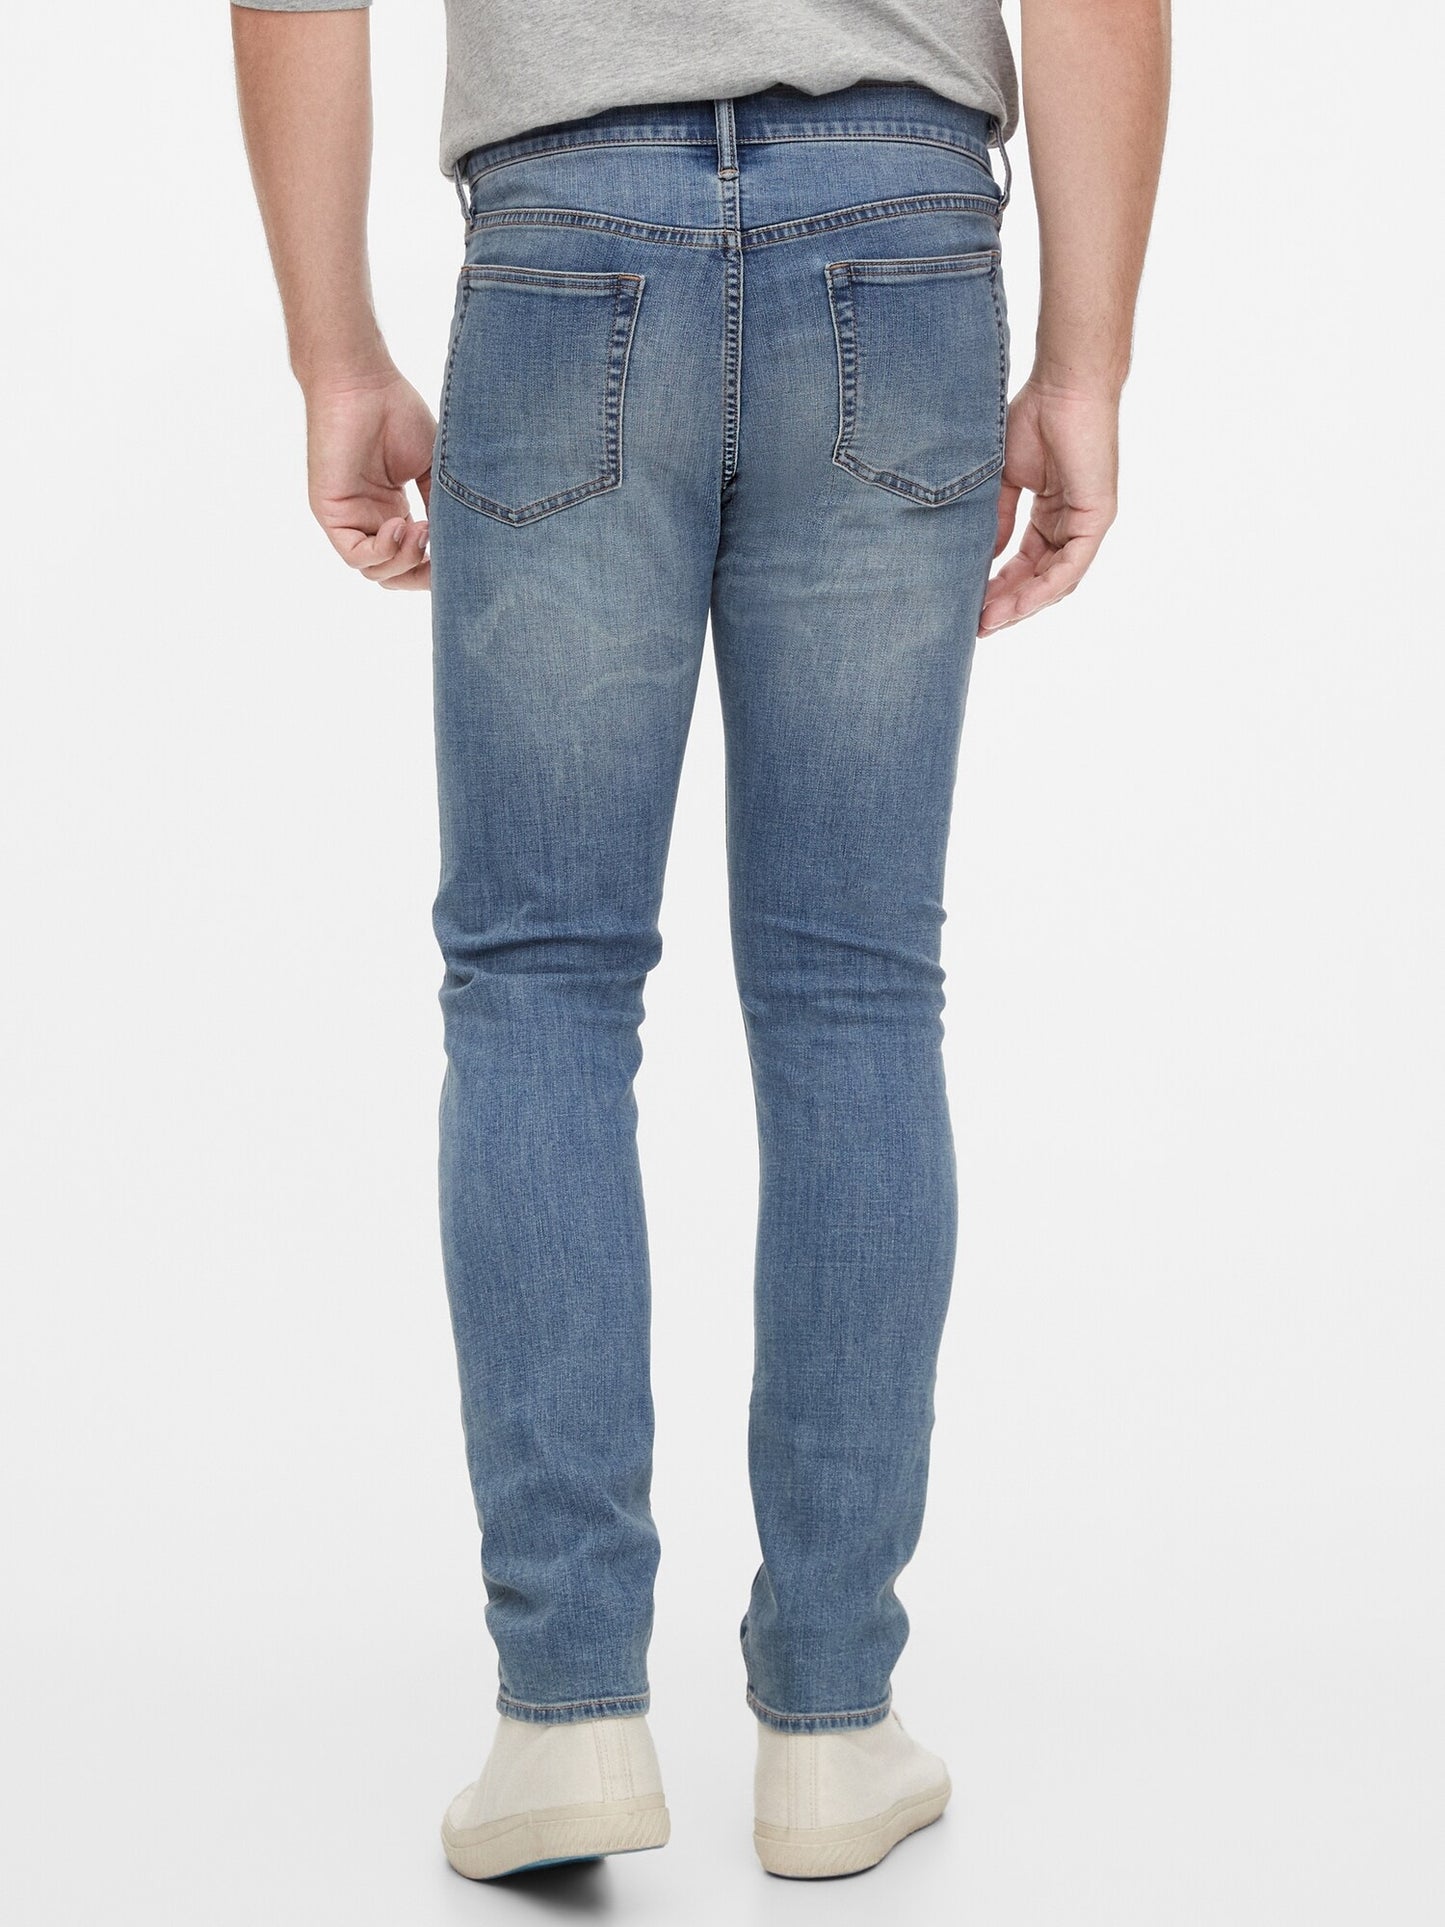 Gap Soft Wear Slim Taper Jeans With Washwell&#153 - Medium Wash